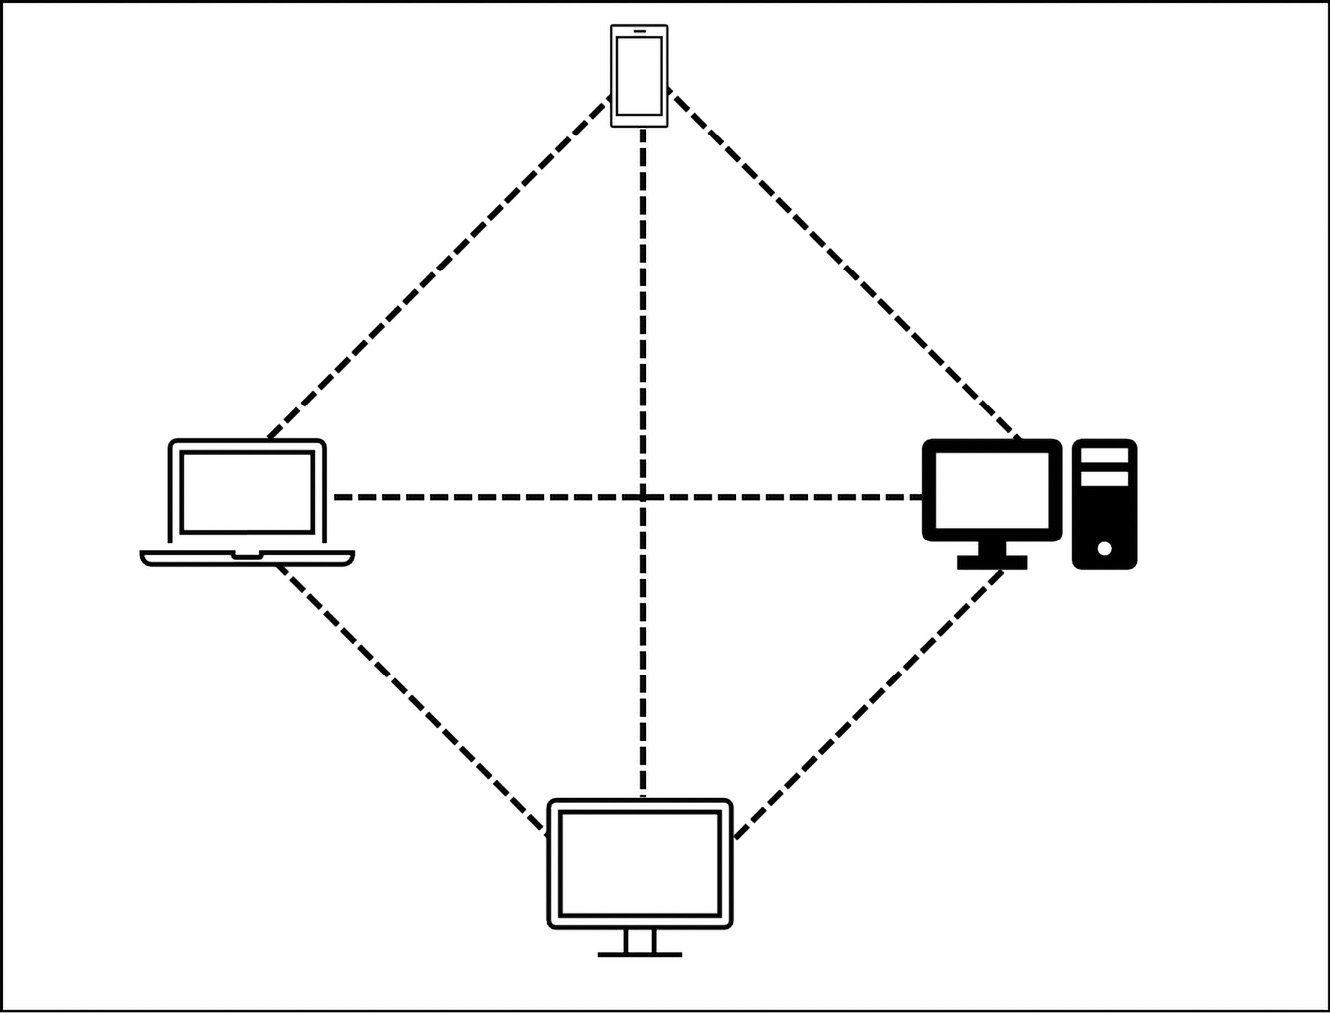 Figure 3.1 – A simple P2P network diagram